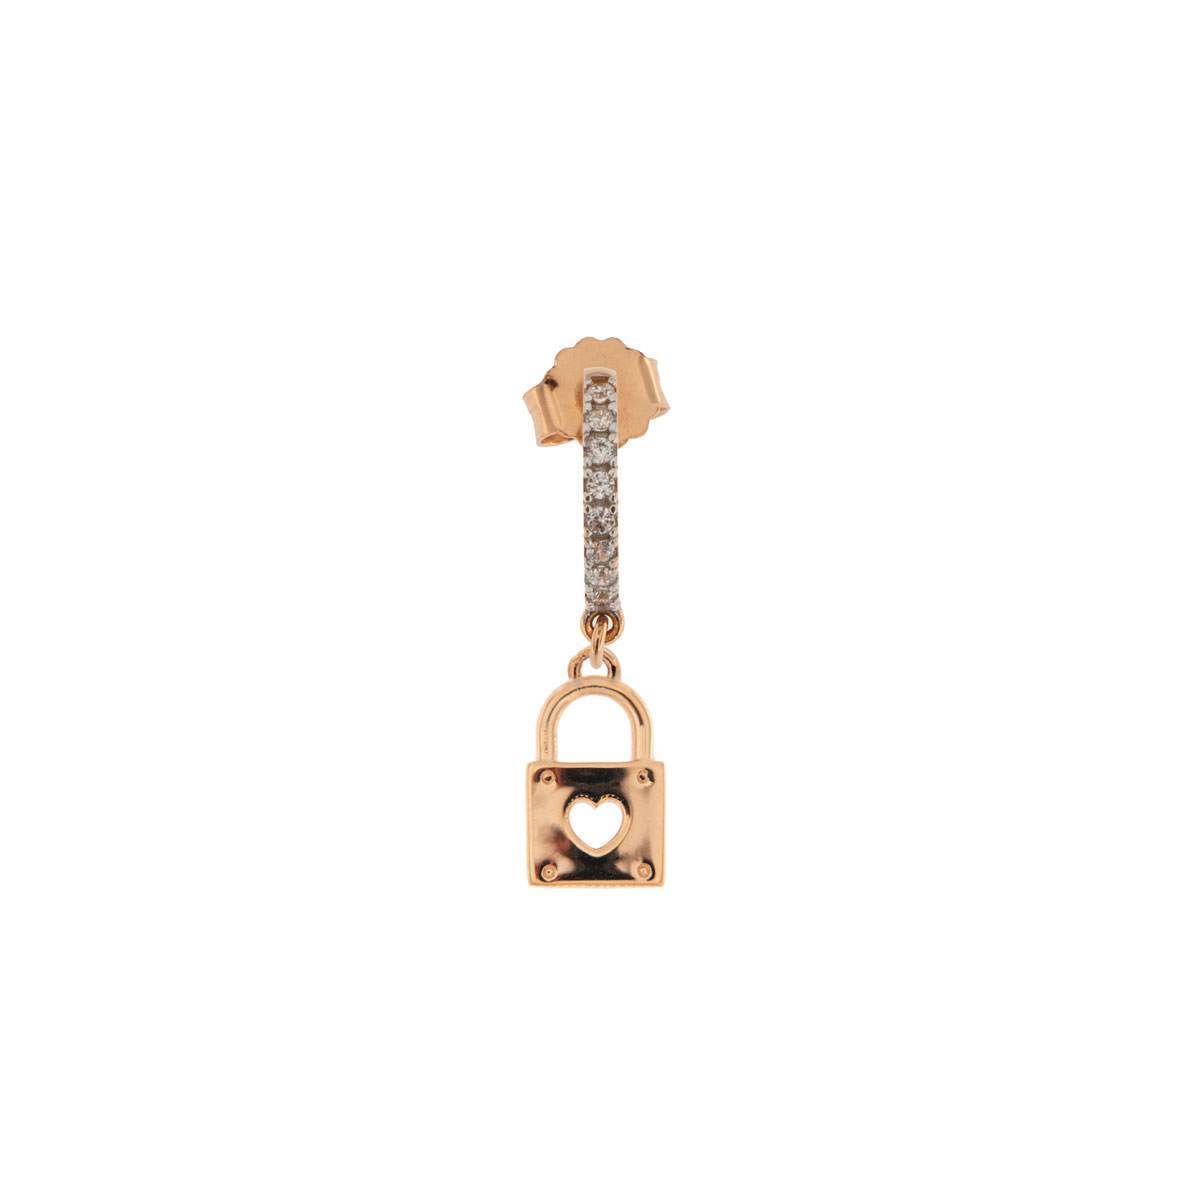 Rue Des Mille mono orecchino a cerchietto in argento 925 placcato in oro rosa 18 kt con soggetto "lucchetto" e zirconi - Codice mono orecchino: ORZ-FA LUC